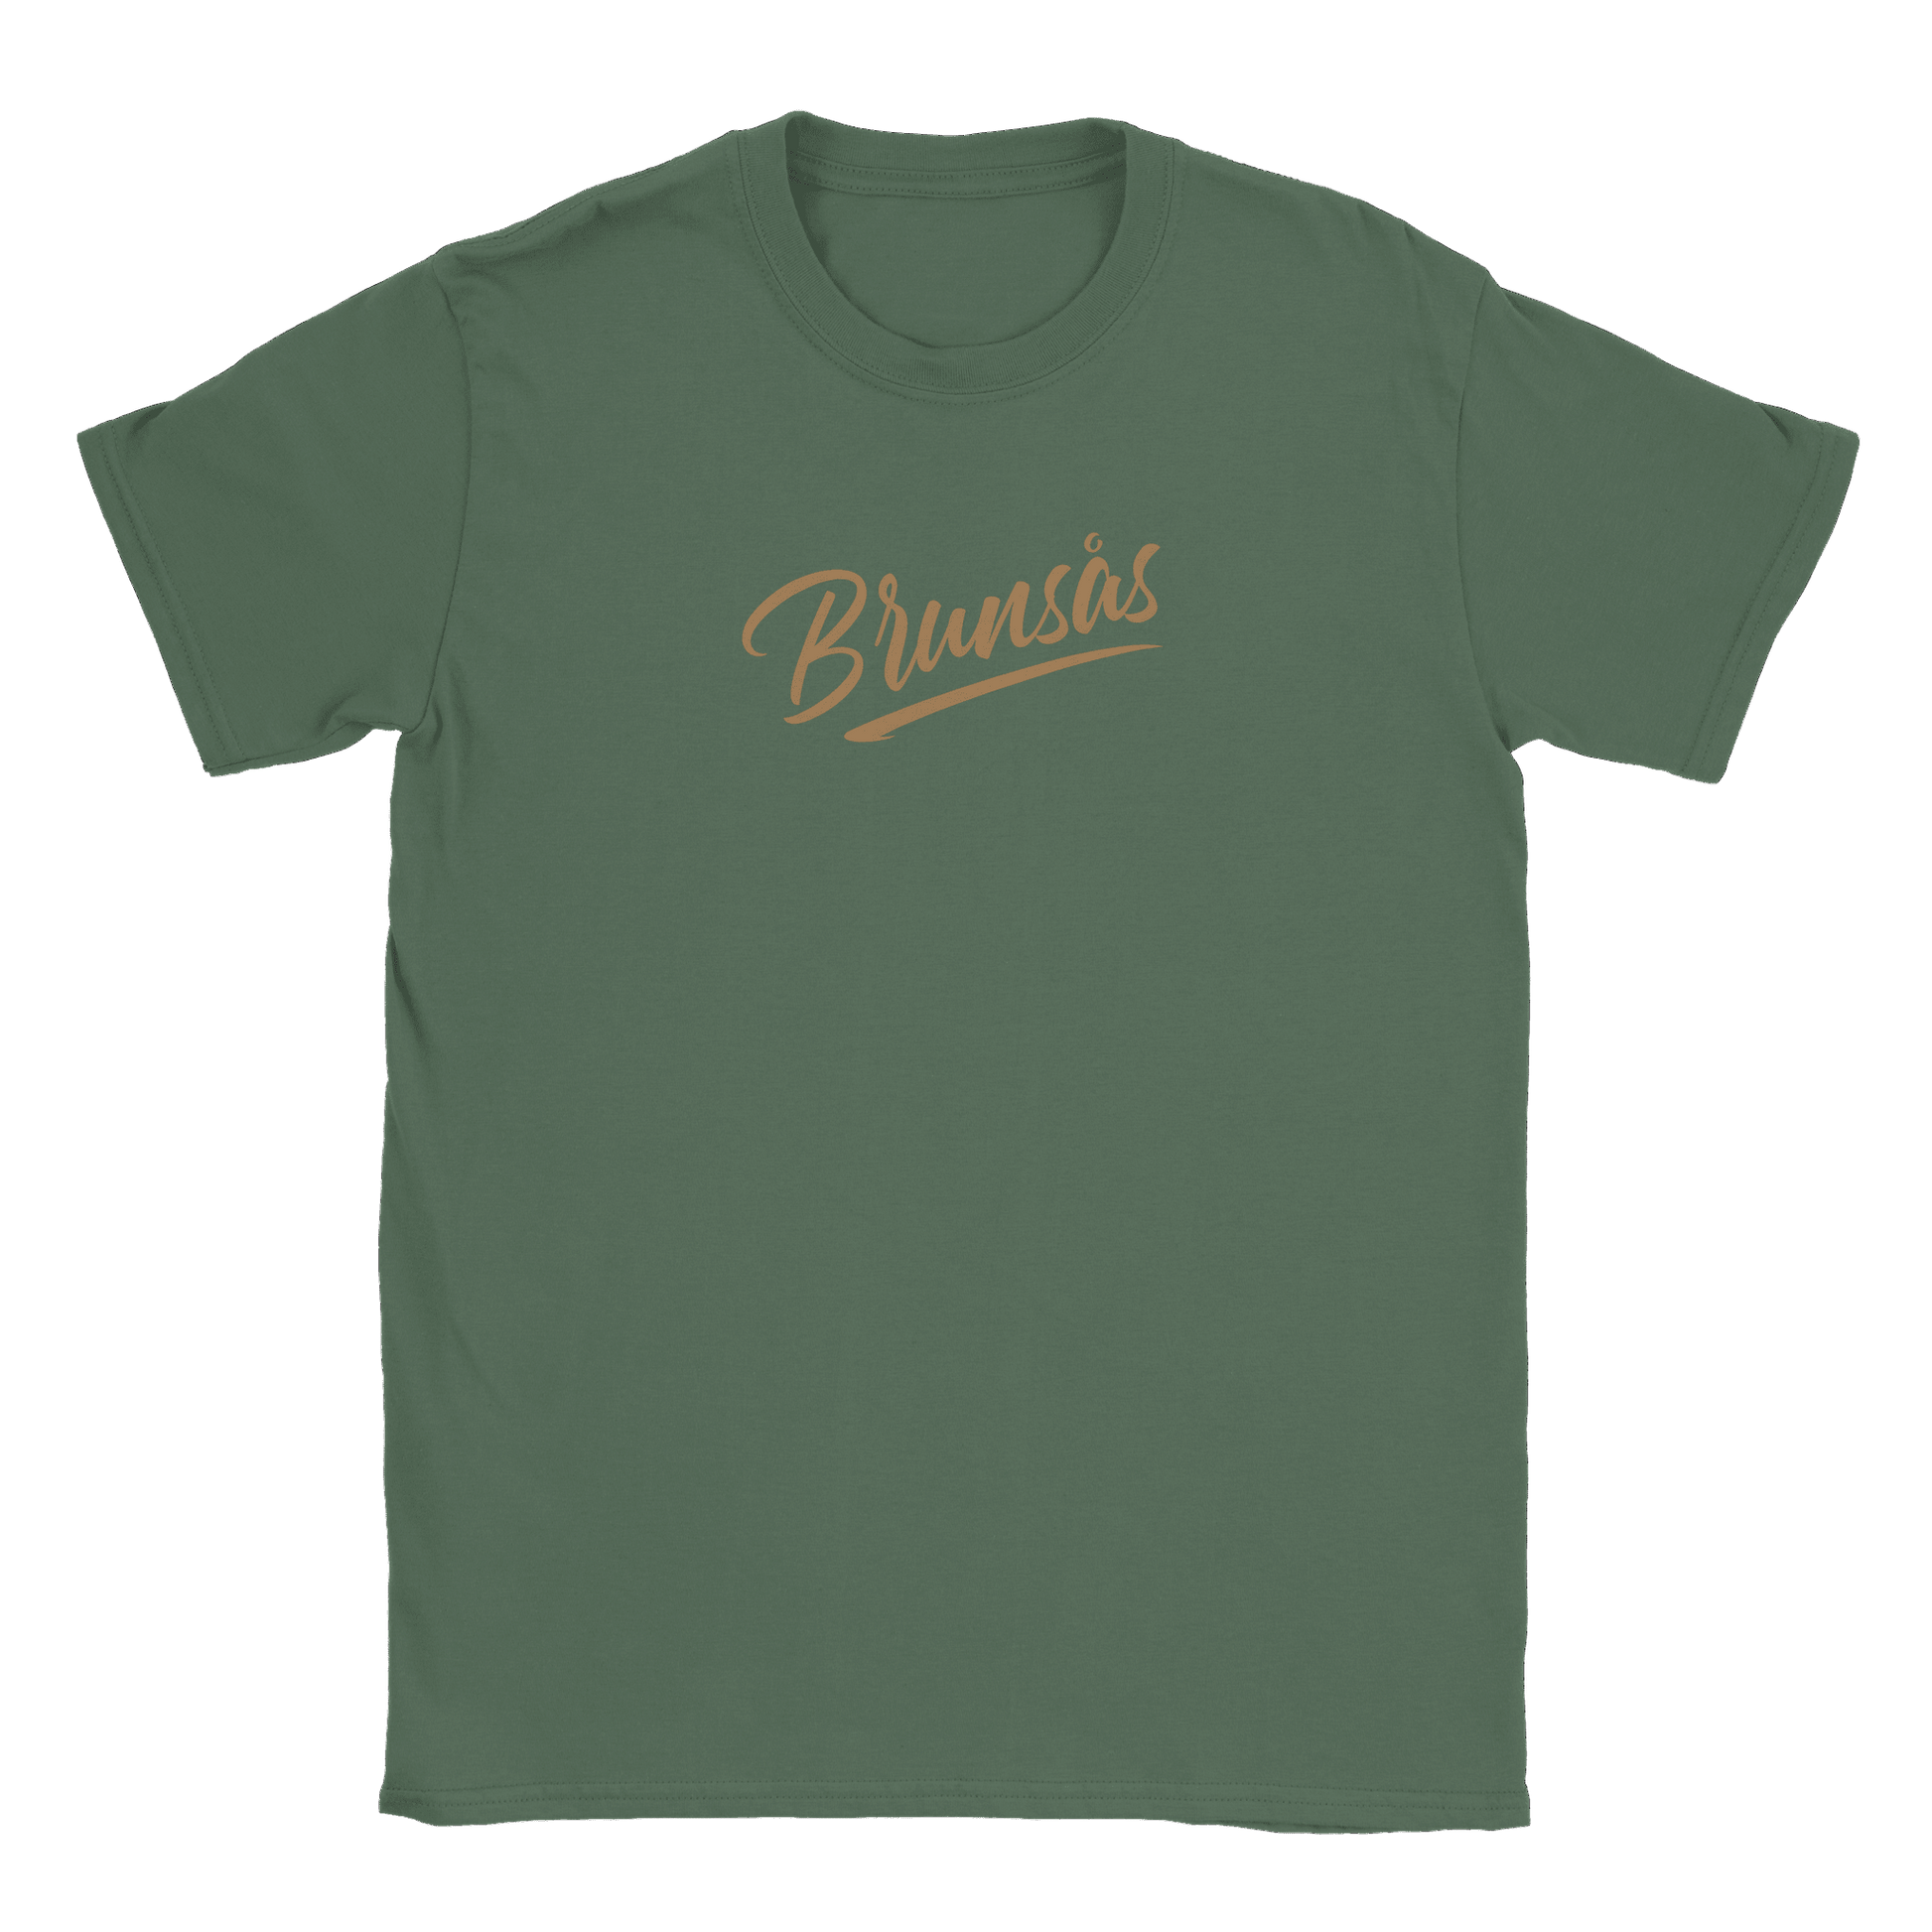 Brunsås - T-shirt Military Green